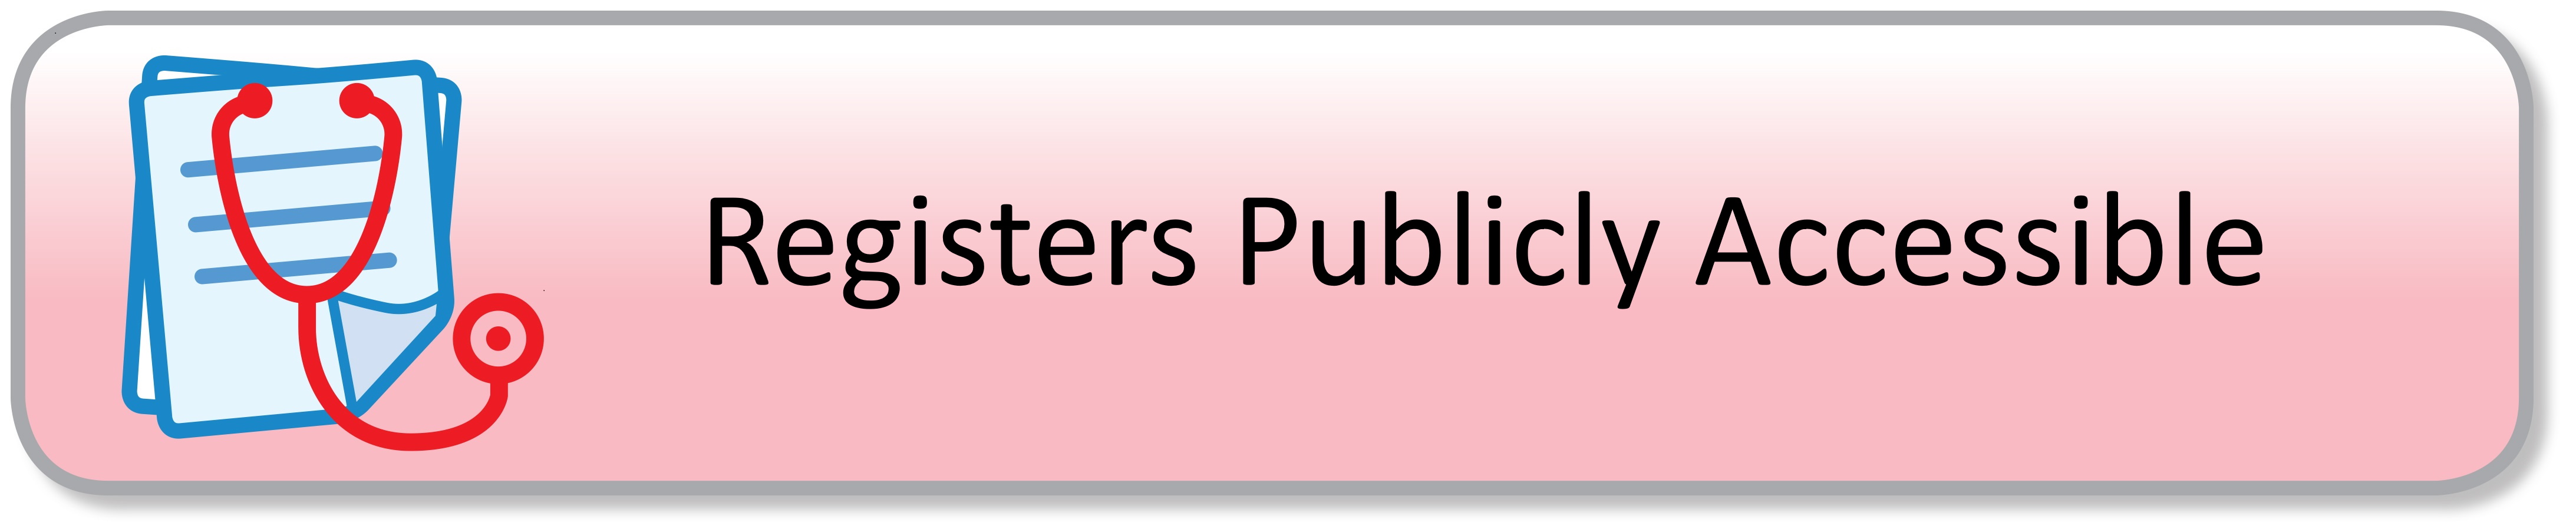 PubScheme Button- Registers .jpg